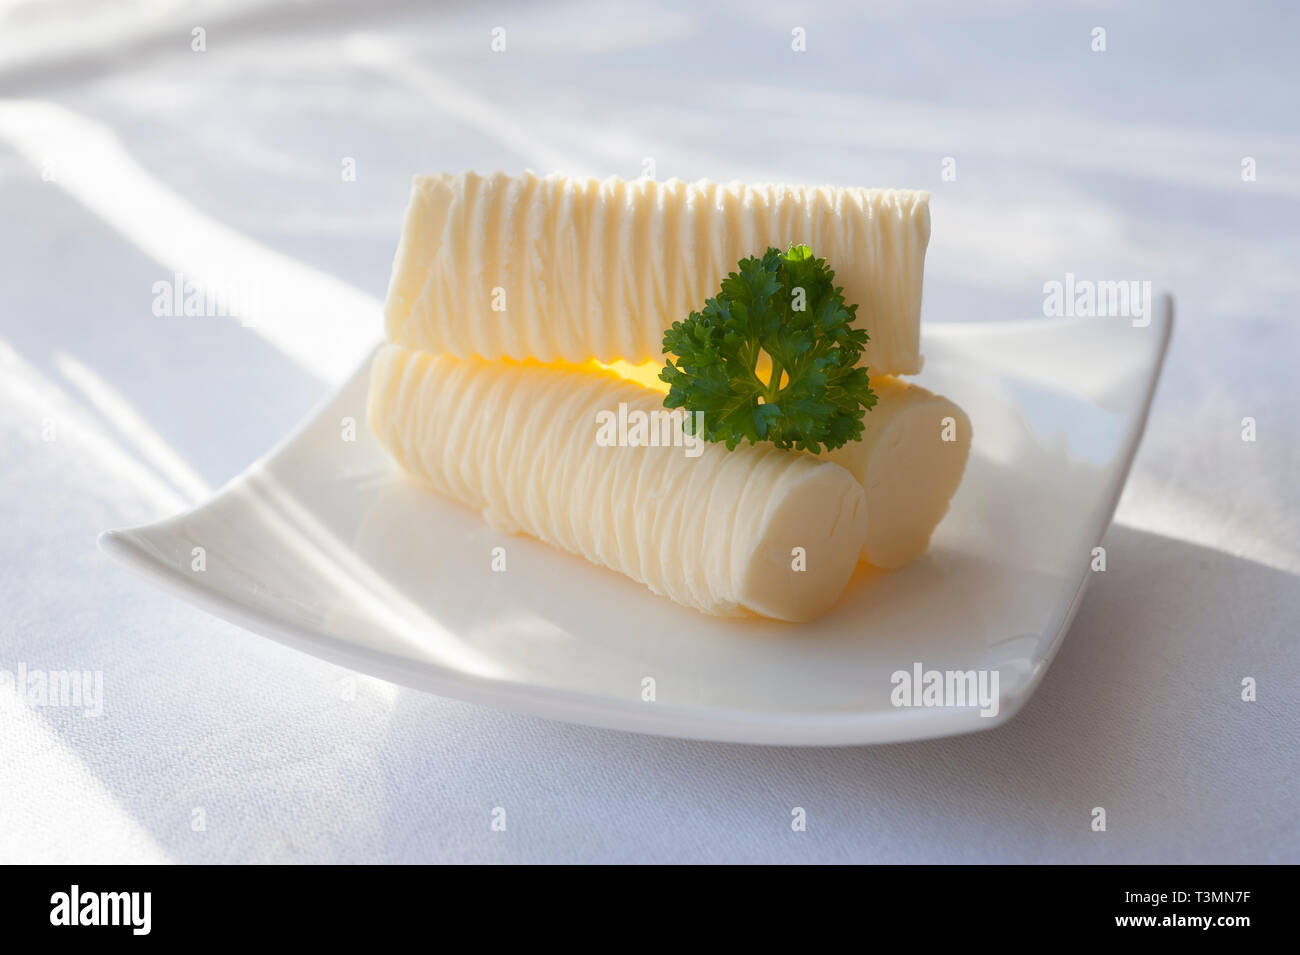 Panecillos de mantequilla con una guarnición de perejil en una soleada mesa Foto de stock